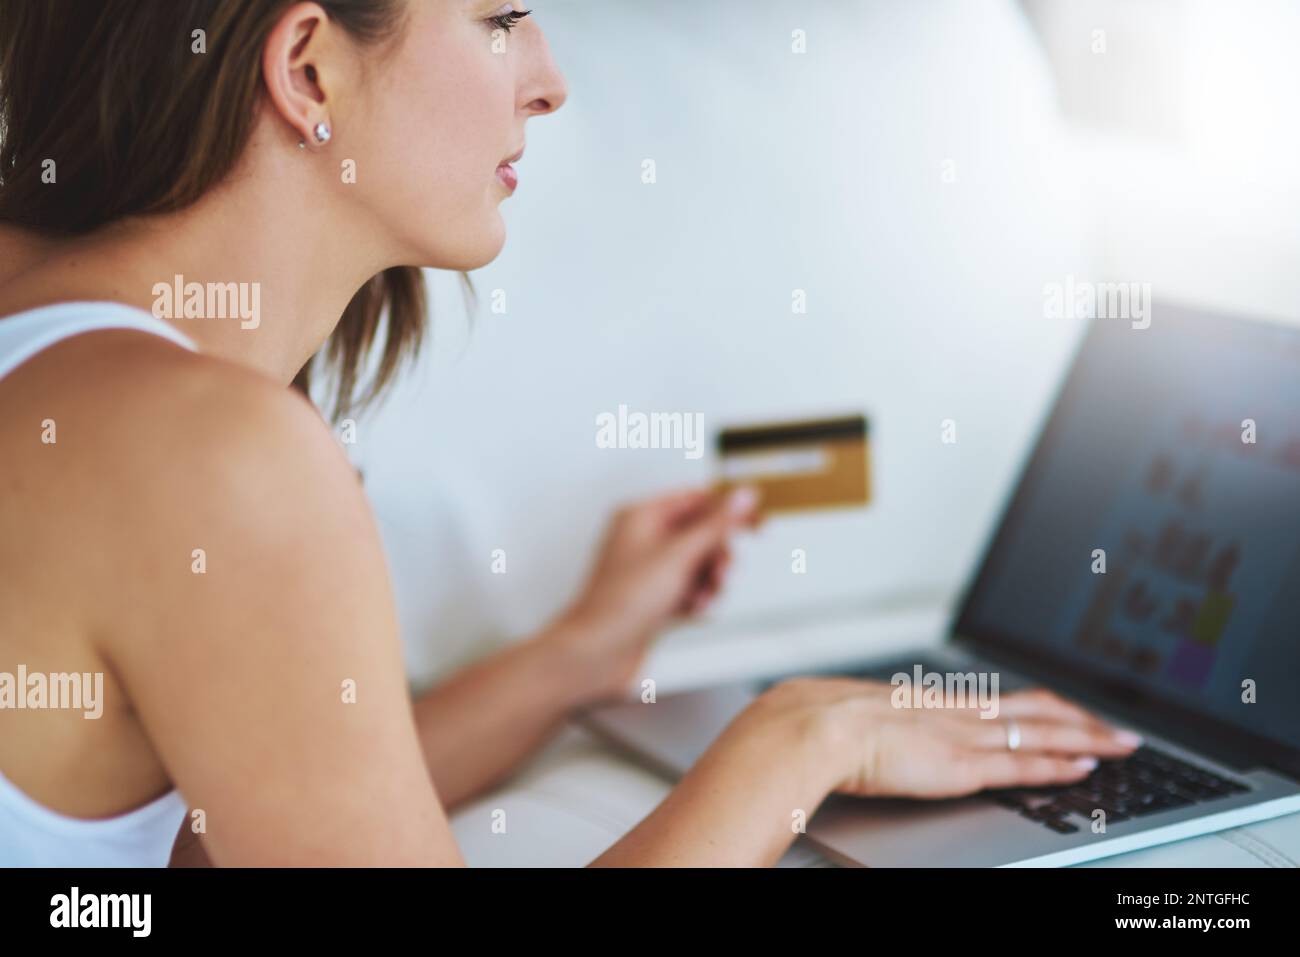 Le week-end, faites du shopping dans le confort de la maison. une jeune femme utilisant sa carte de crédit pour effectuer un paiement en ligne à la maison. Banque D'Images